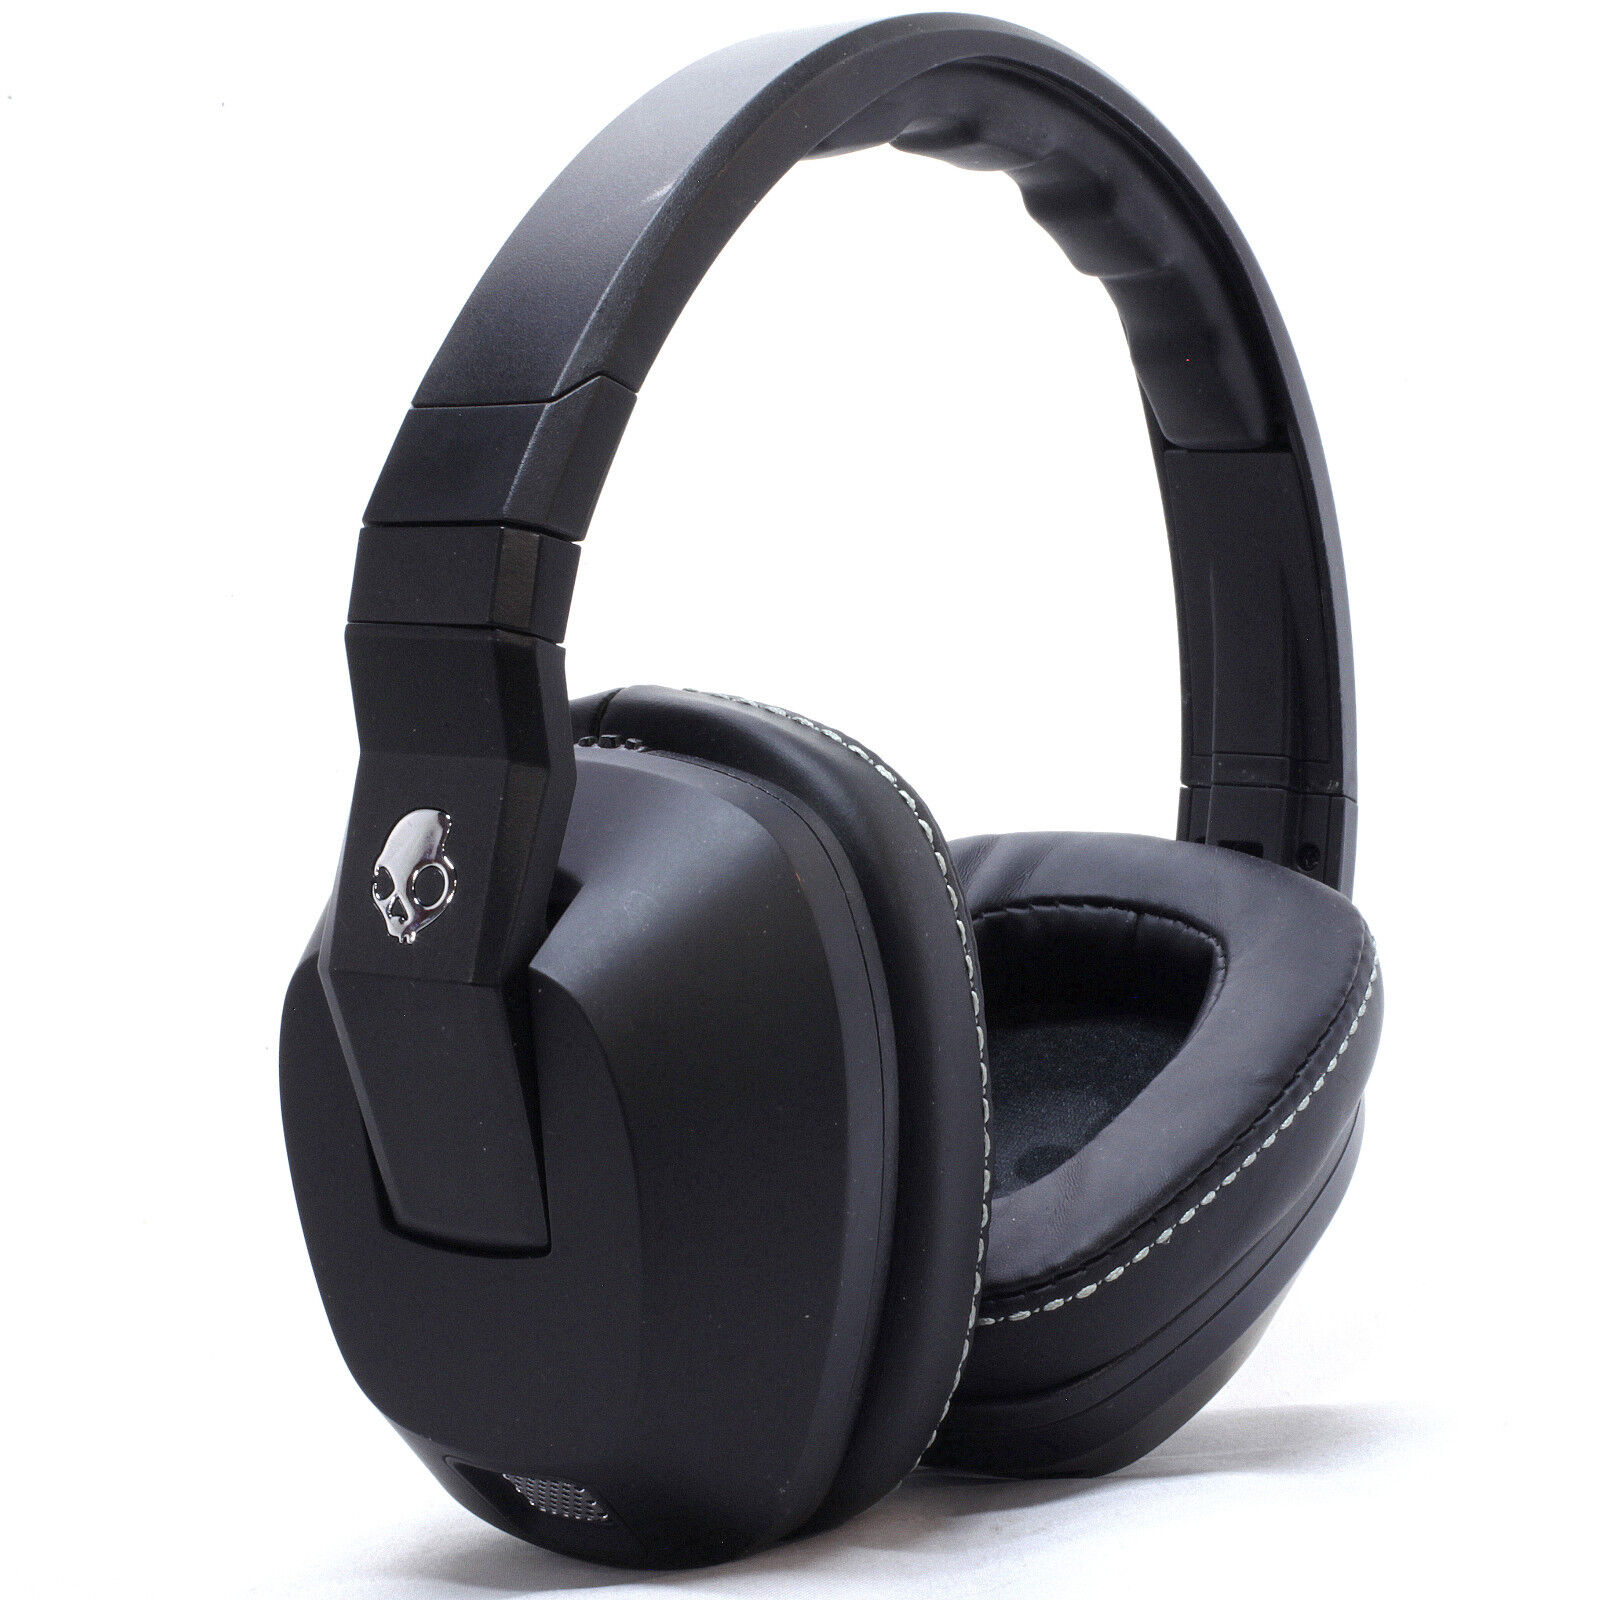 Skullcandy Crusher Wireless Headphones - Black for sale online | eBay